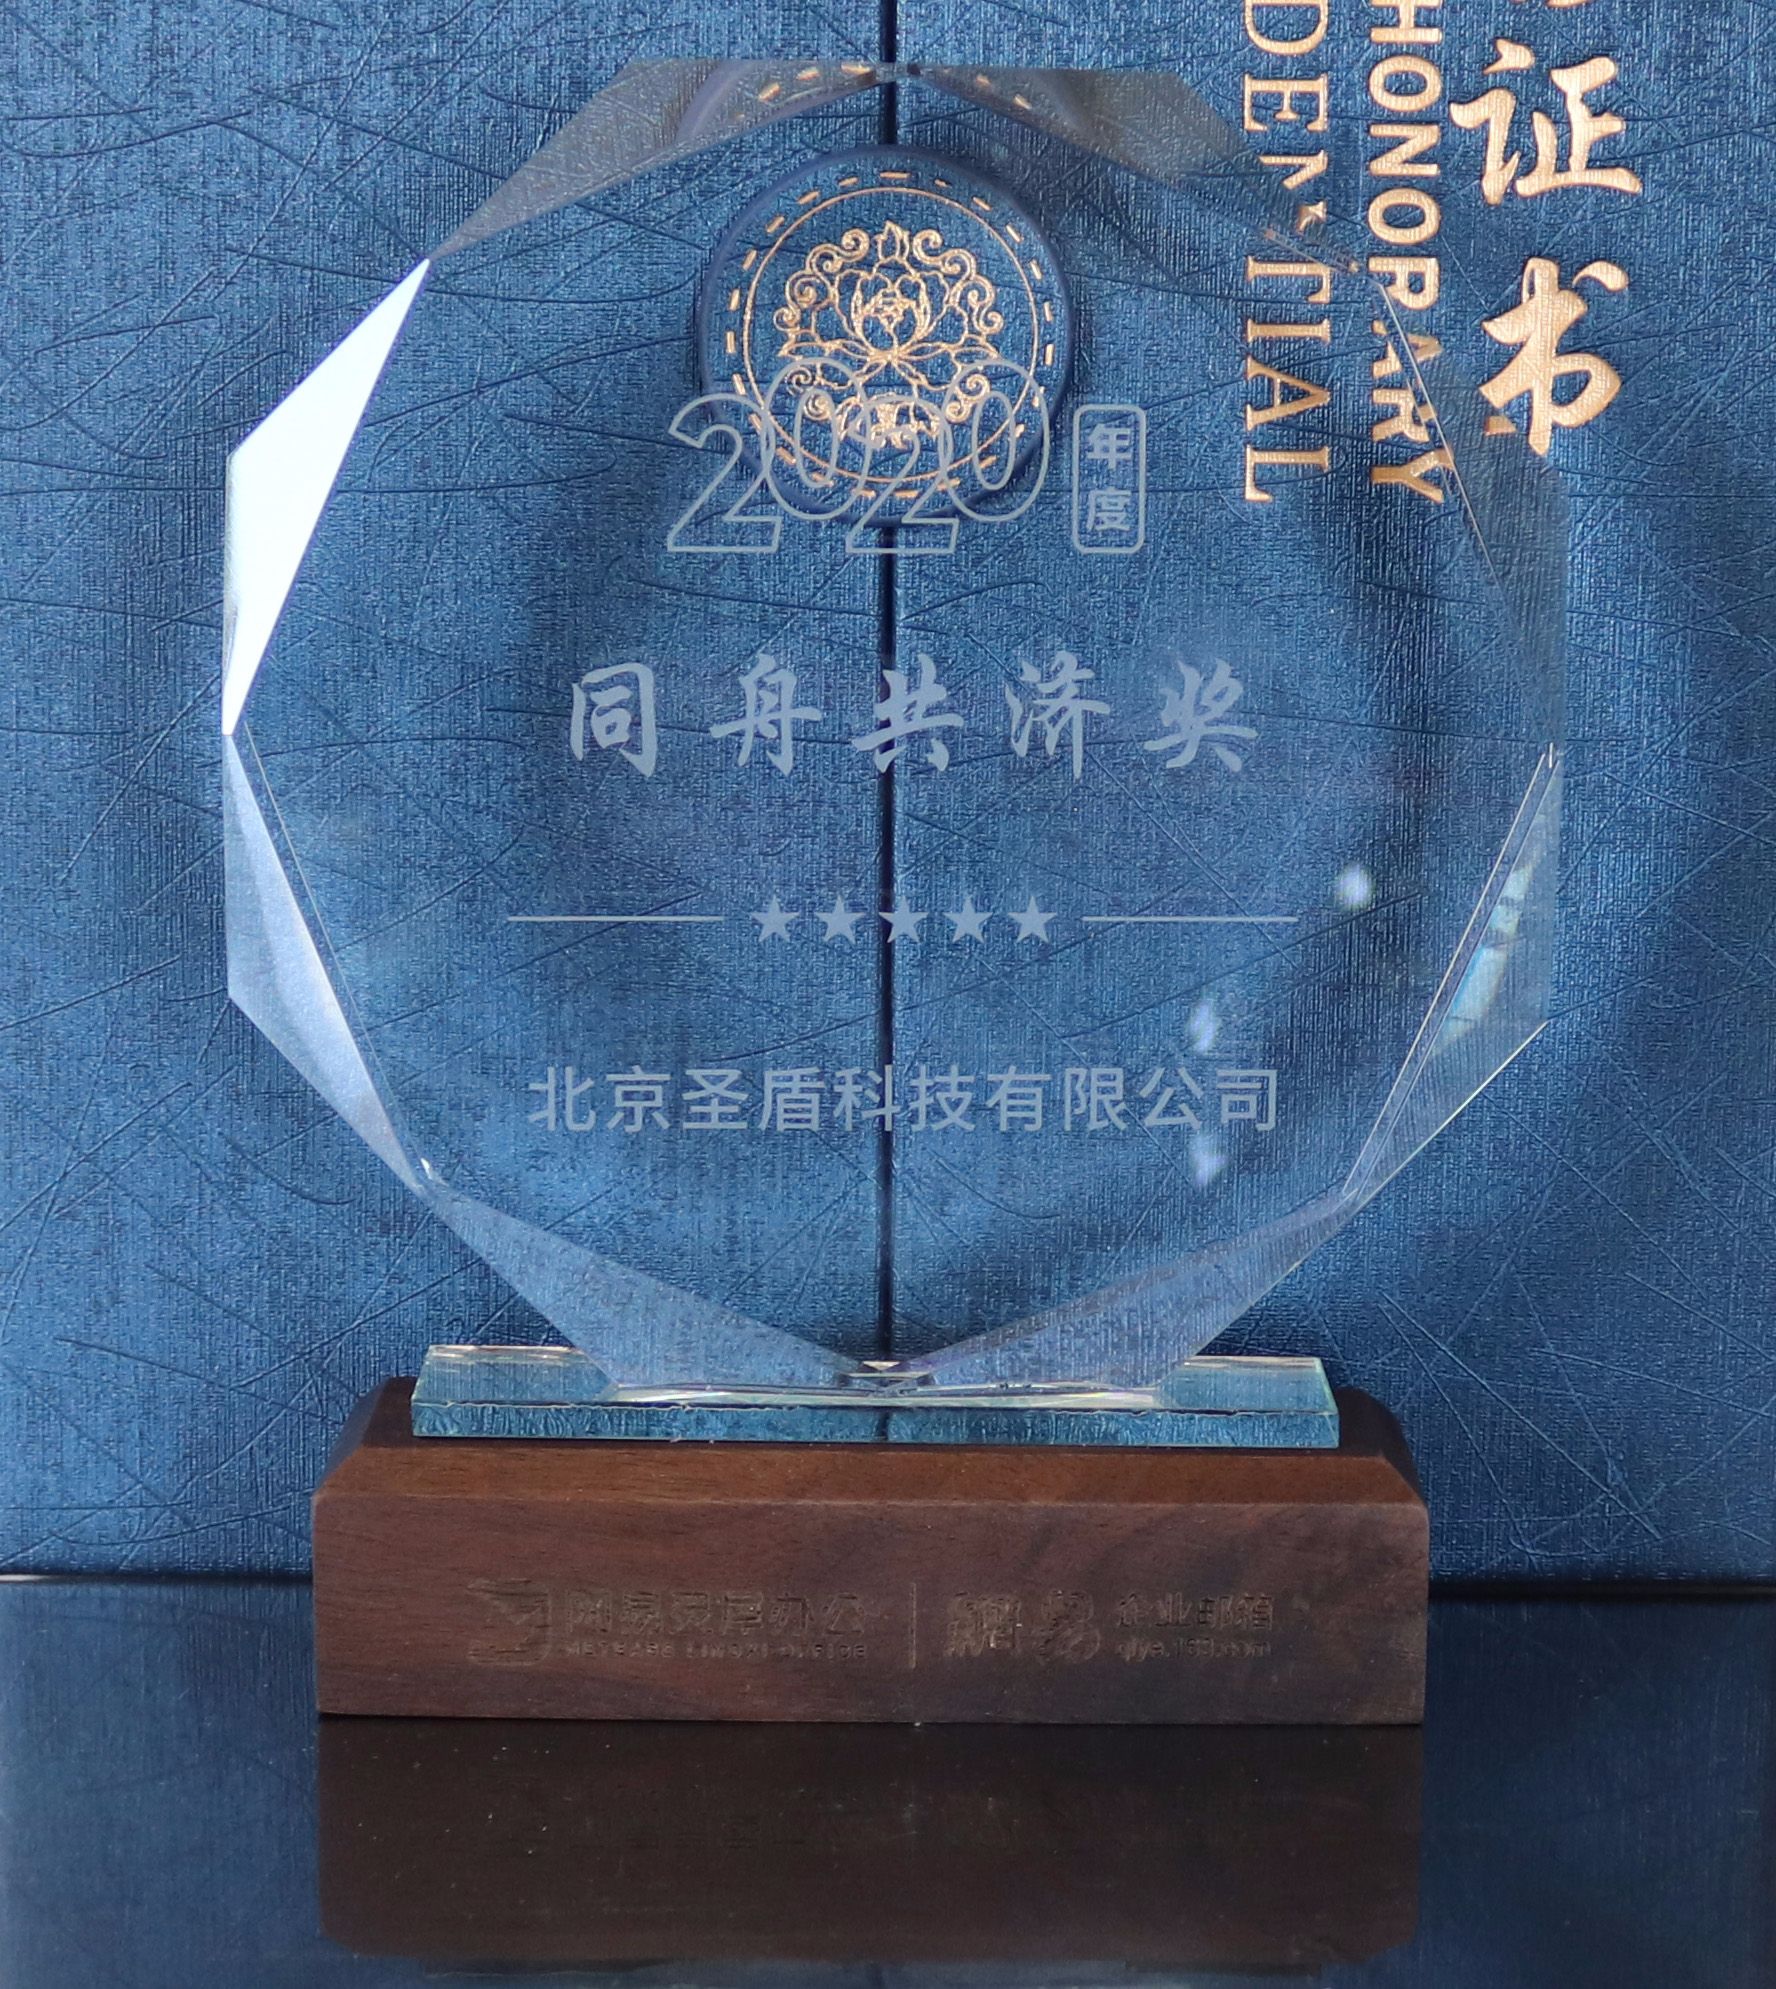 北京圣盾科技有限公司荣获2020年度网易“卓越开拓伙伴”奖项